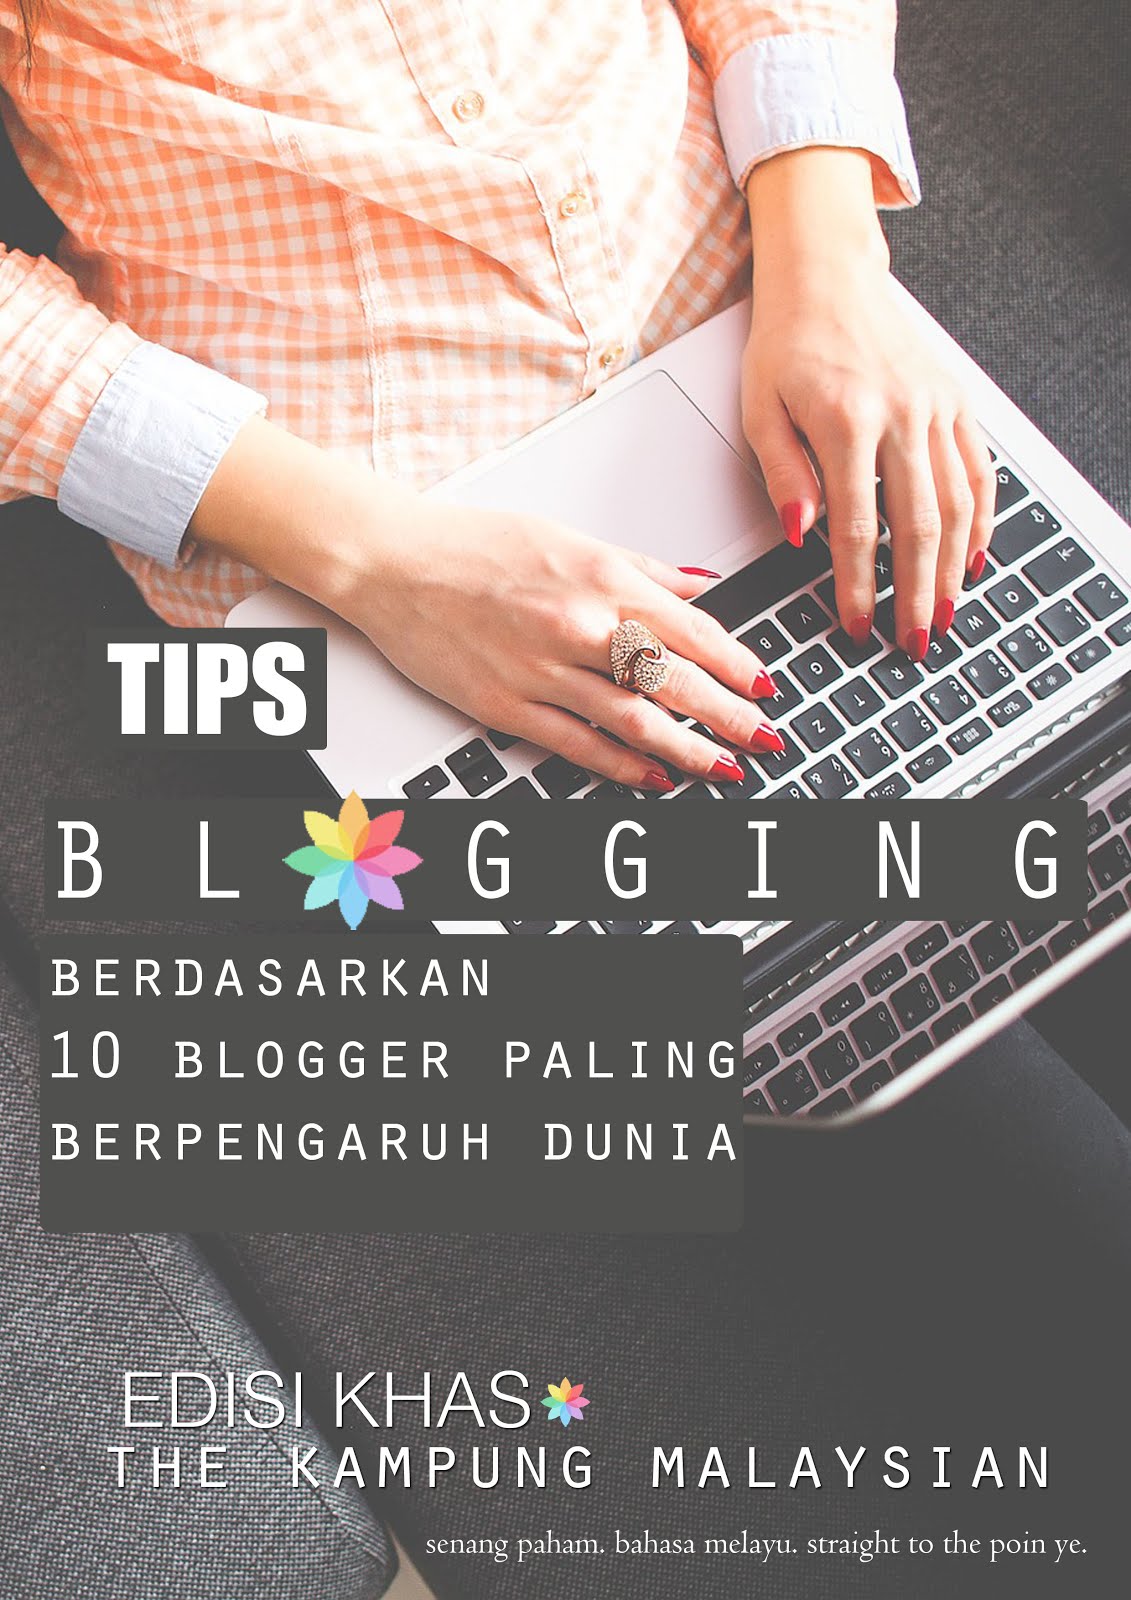 Dapatkan Ebook Percuma Tips Berblogging. Subscribe Kampung Malaysian harini.